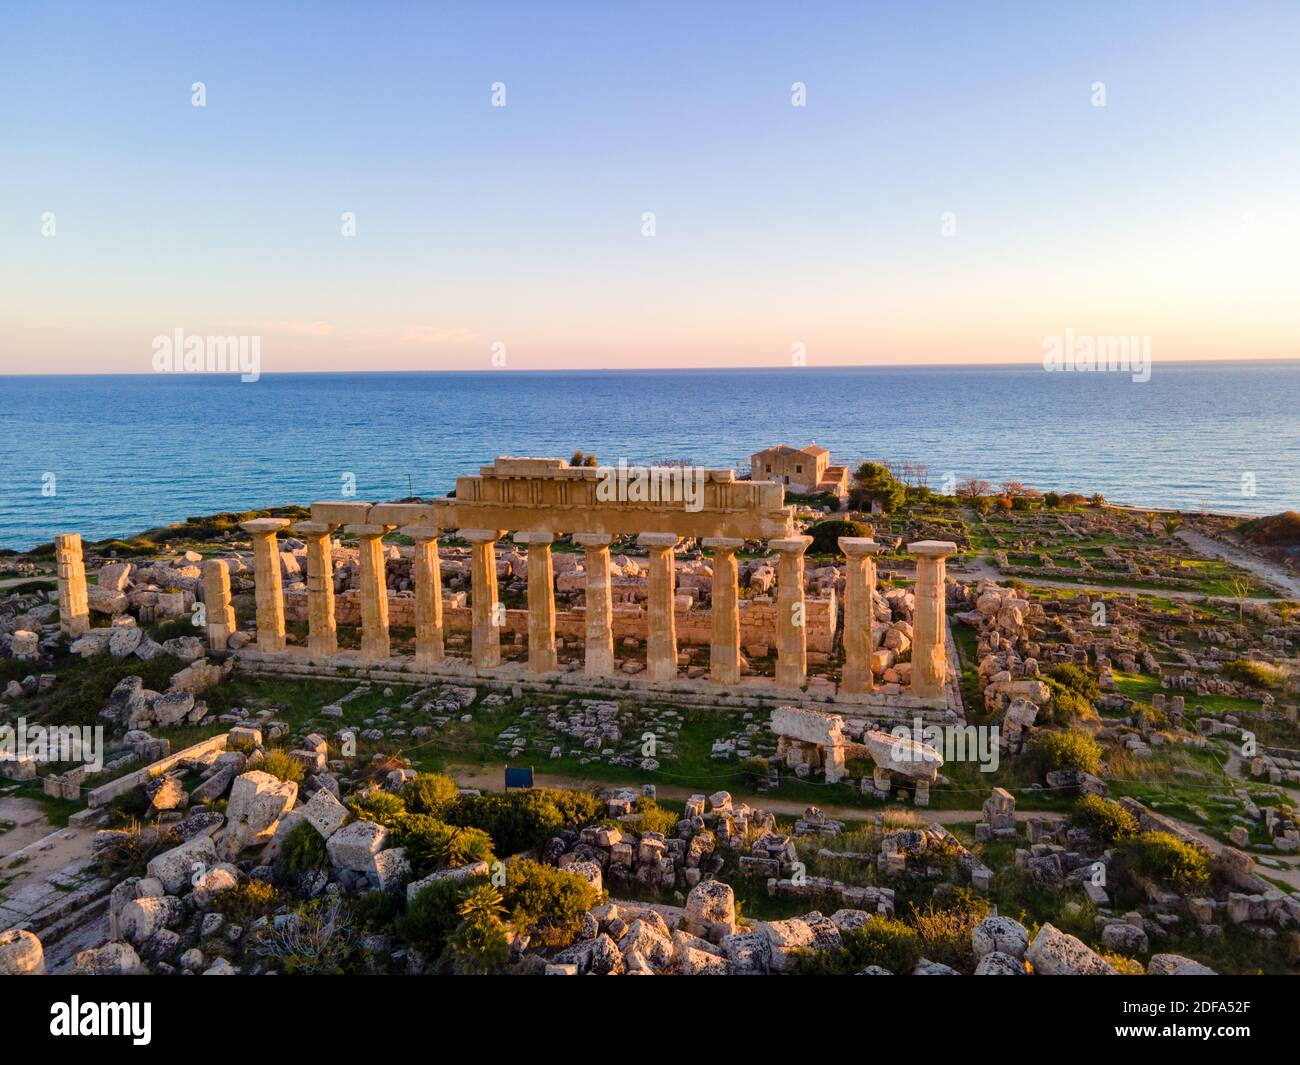 Temples grecs à Selinunte, vue sur la mer et les ruines des colonnes grecques dans le Parc archéologique de Selinunte Sicile Italie Banque D'Images